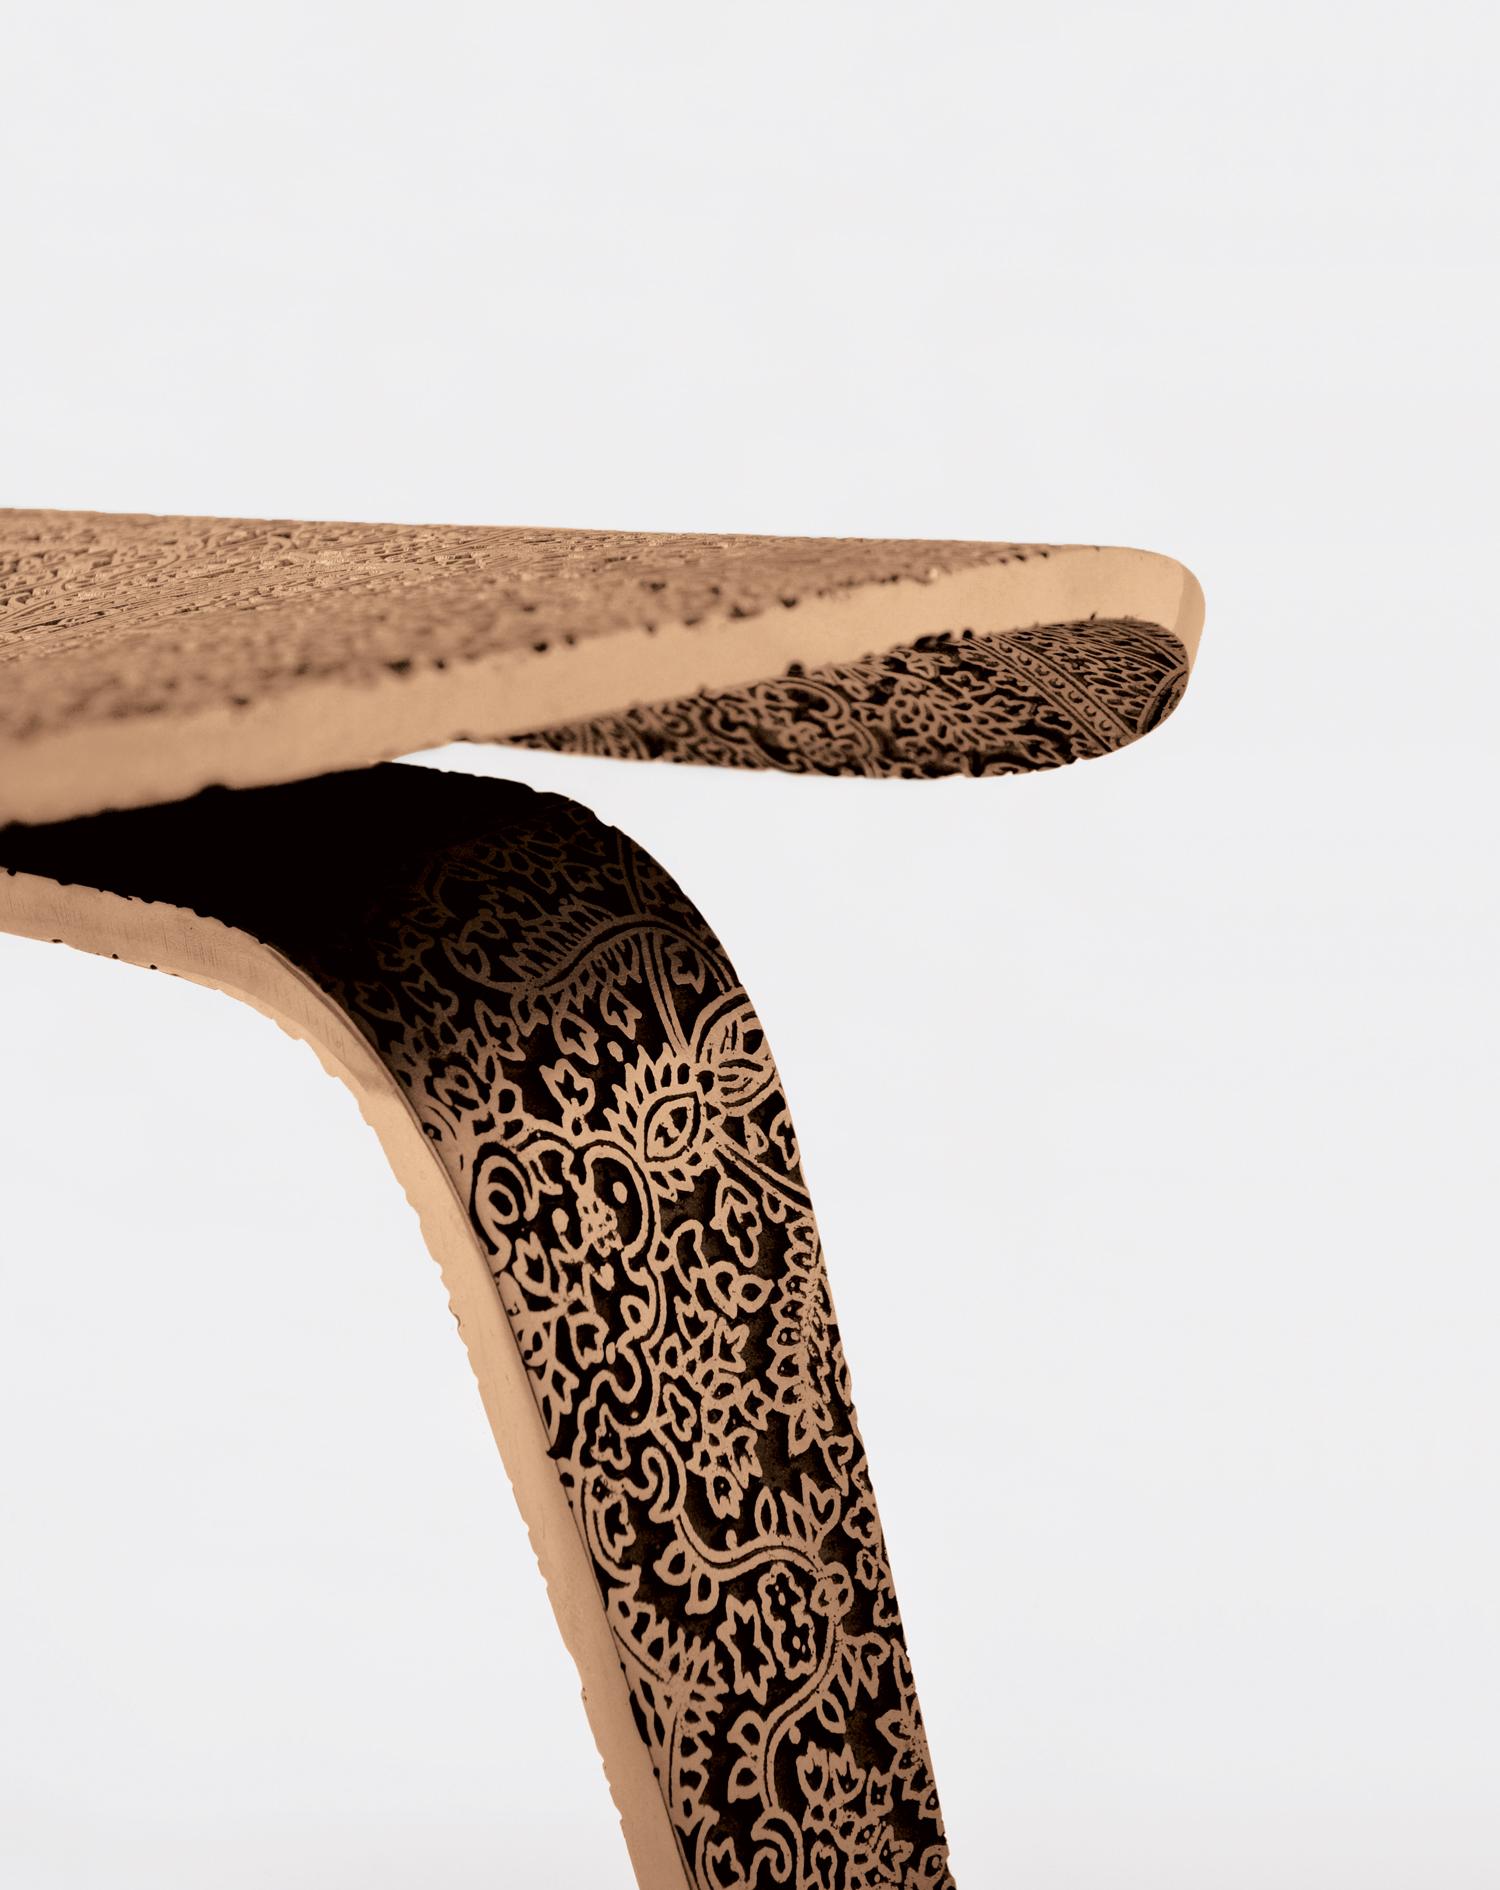 Ethno Eames - Bronze - Design Chair Paolo Giordano Edition Cast Contemporary
Ethno Eames - Bronze

L'application de la décoration ethnique indienne aux icônes du design moderne est à première vue provocante. C'est la superposition de l'ornementation